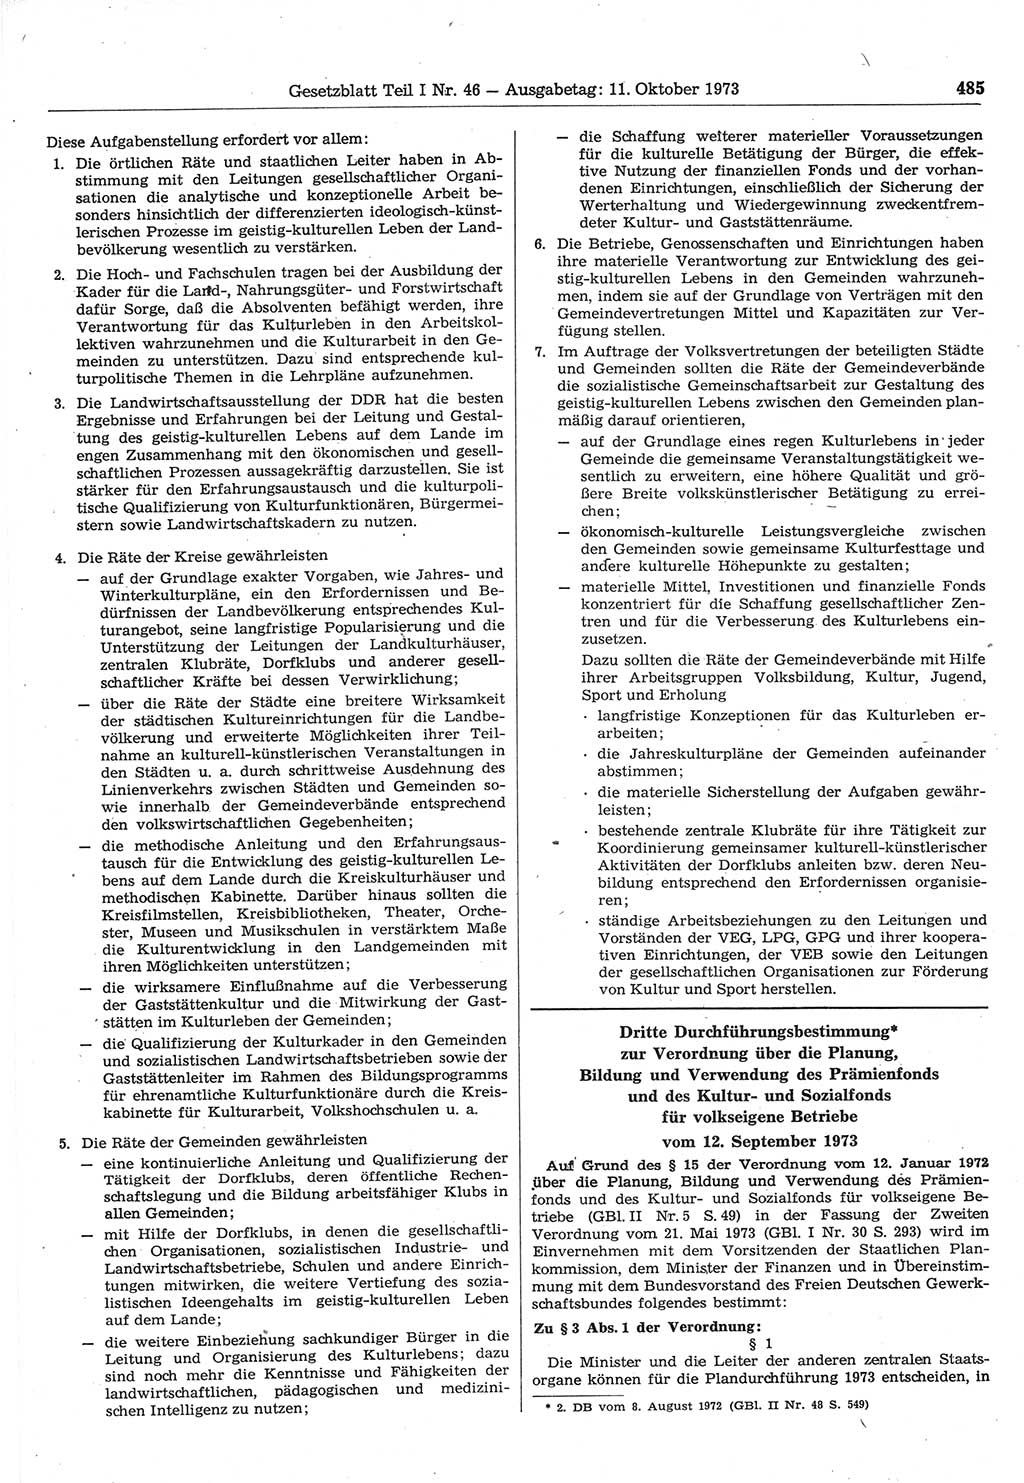 Gesetzblatt (GBl.) der Deutschen Demokratischen Republik (DDR) Teil Ⅰ 1973, Seite 485 (GBl. DDR Ⅰ 1973, S. 485)